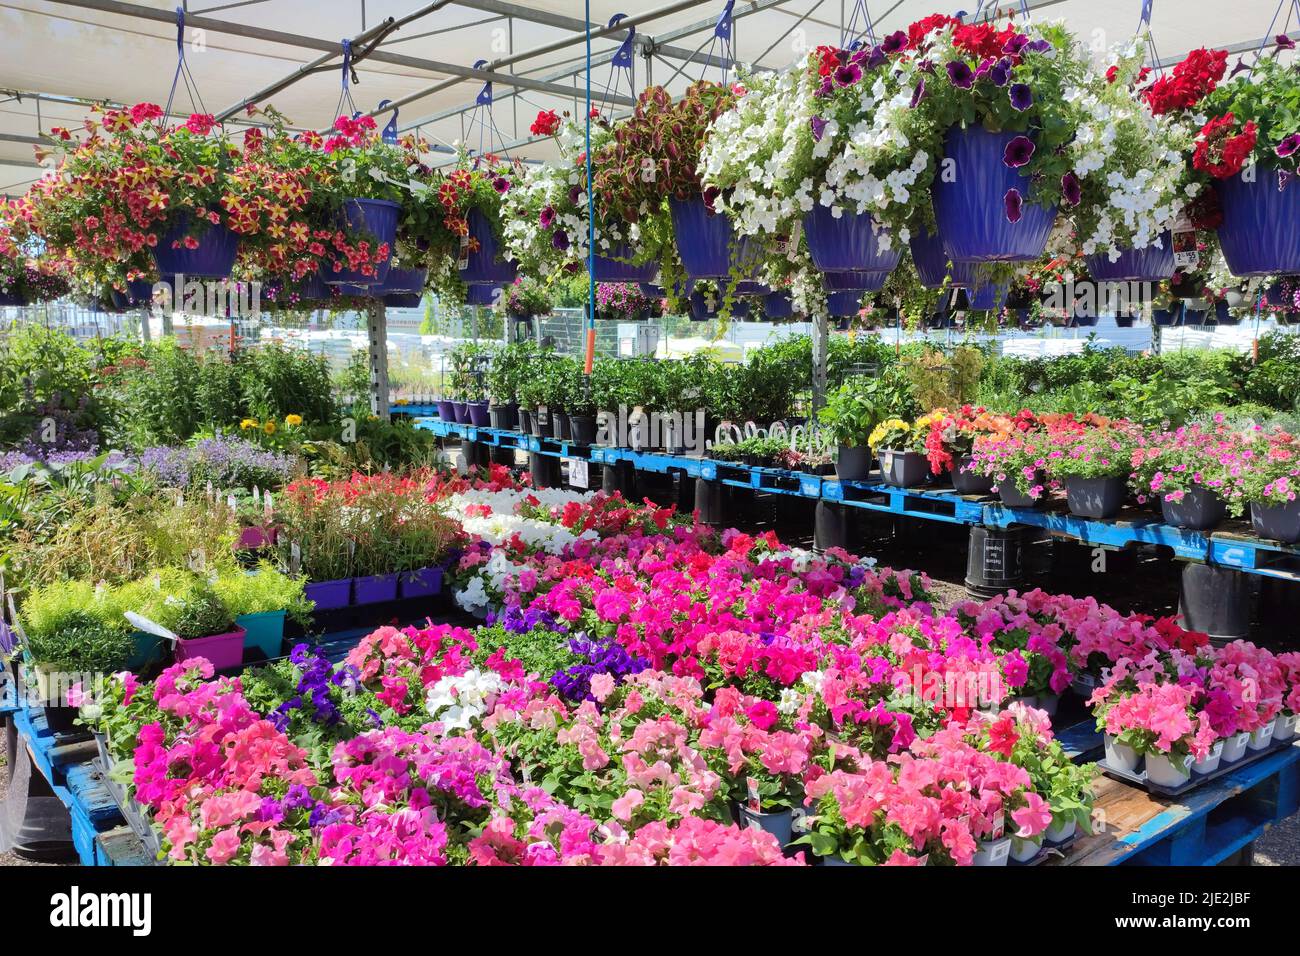 Das Gartencenter im Supermarkt. Blumen in einem Topf. Verschiedene Pflanzen, Blumen, Keimling, Dünger, Blume in hängenden Korb. Stockfoto